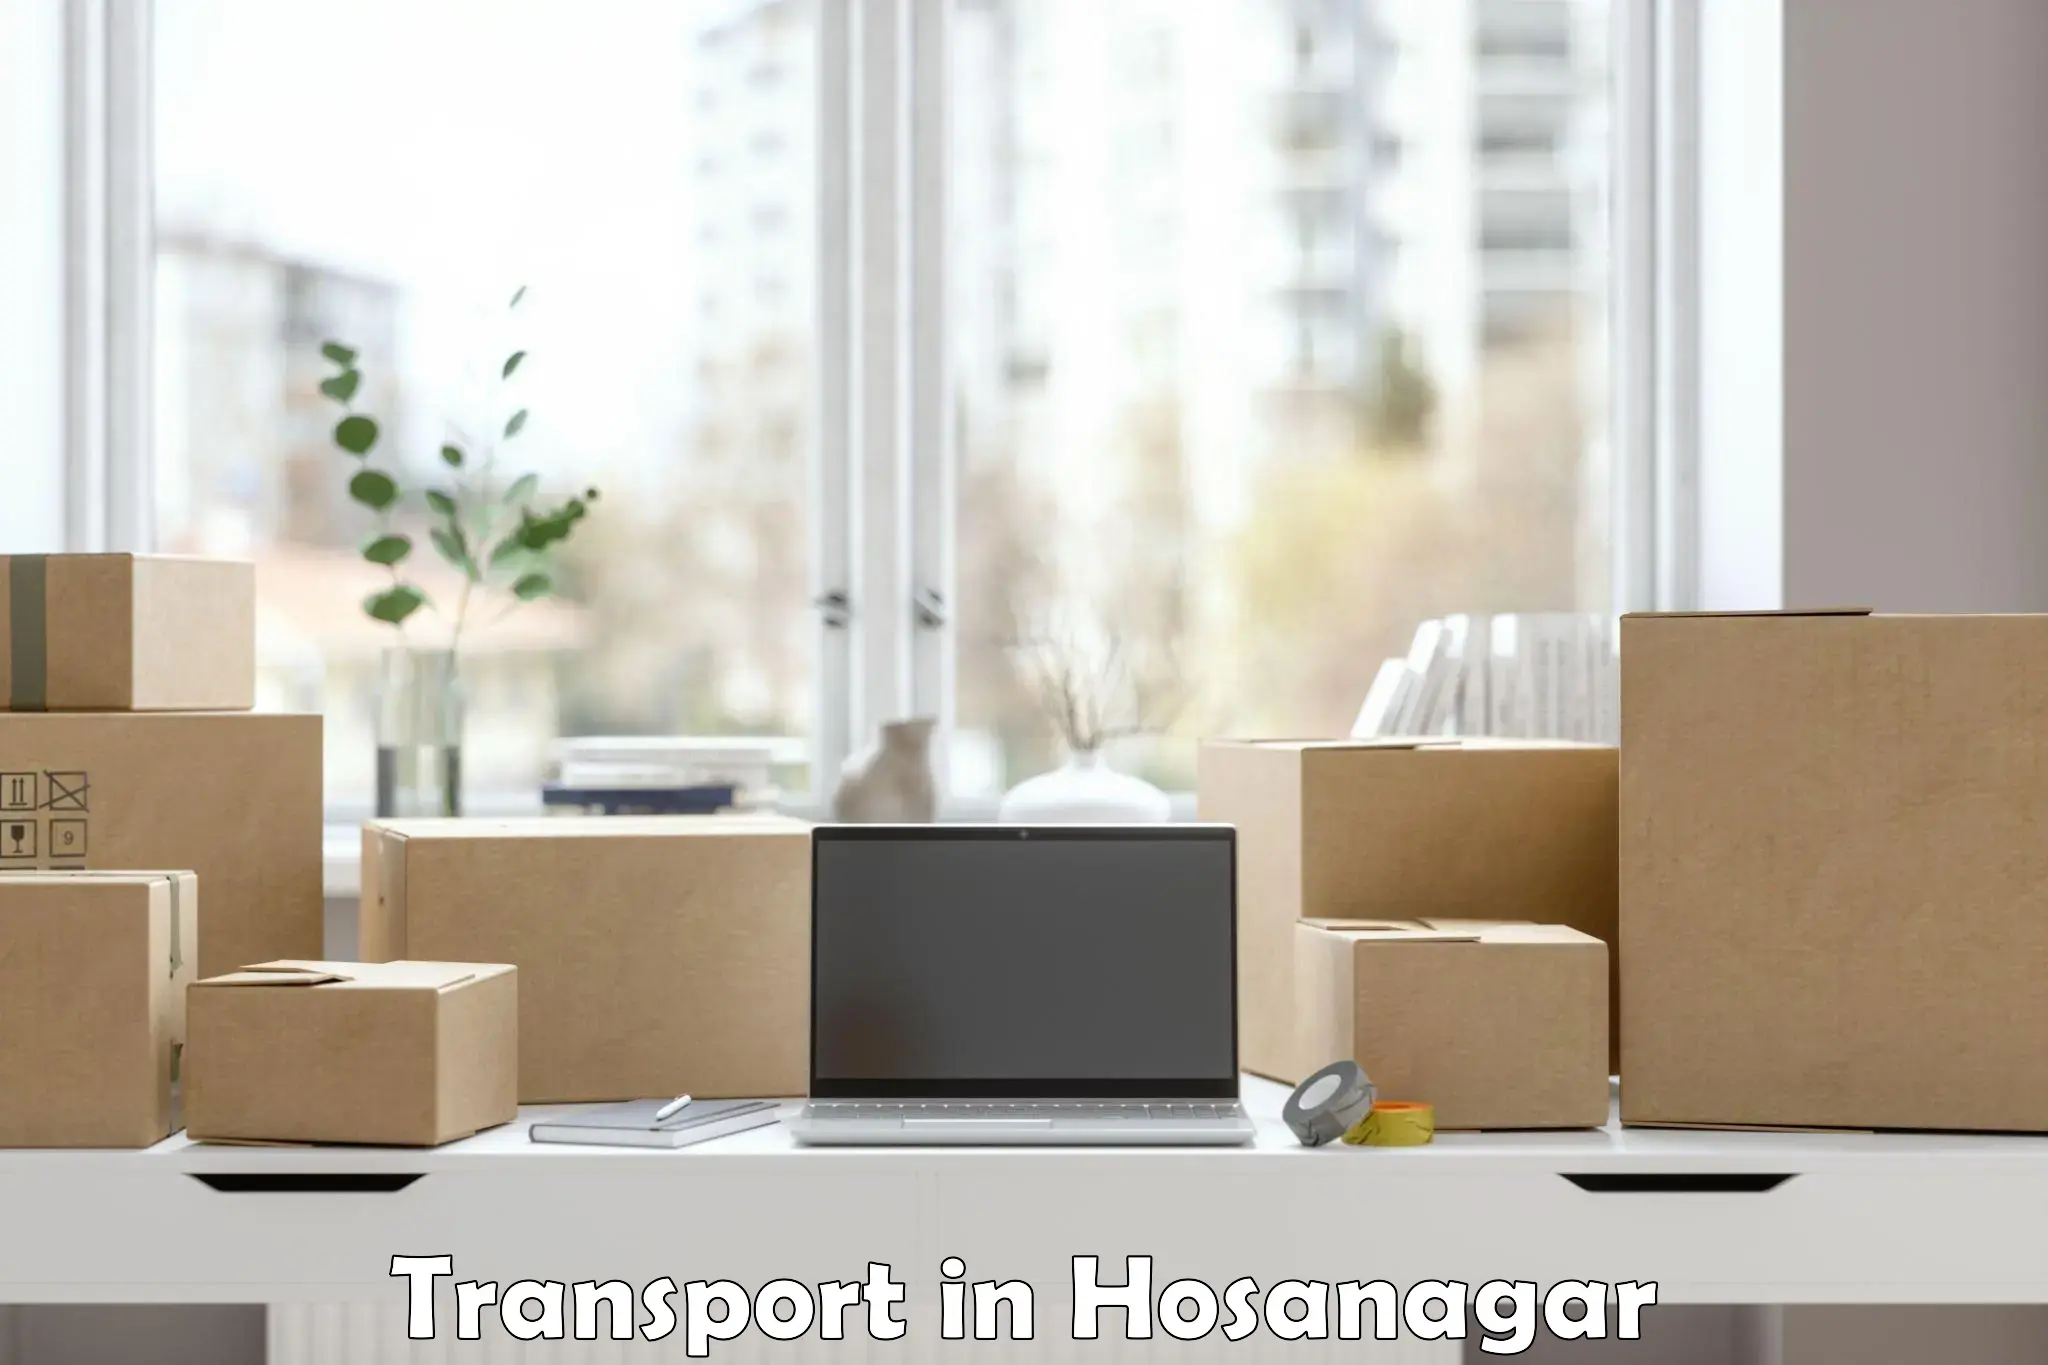 Daily parcel service transport in Hosanagar